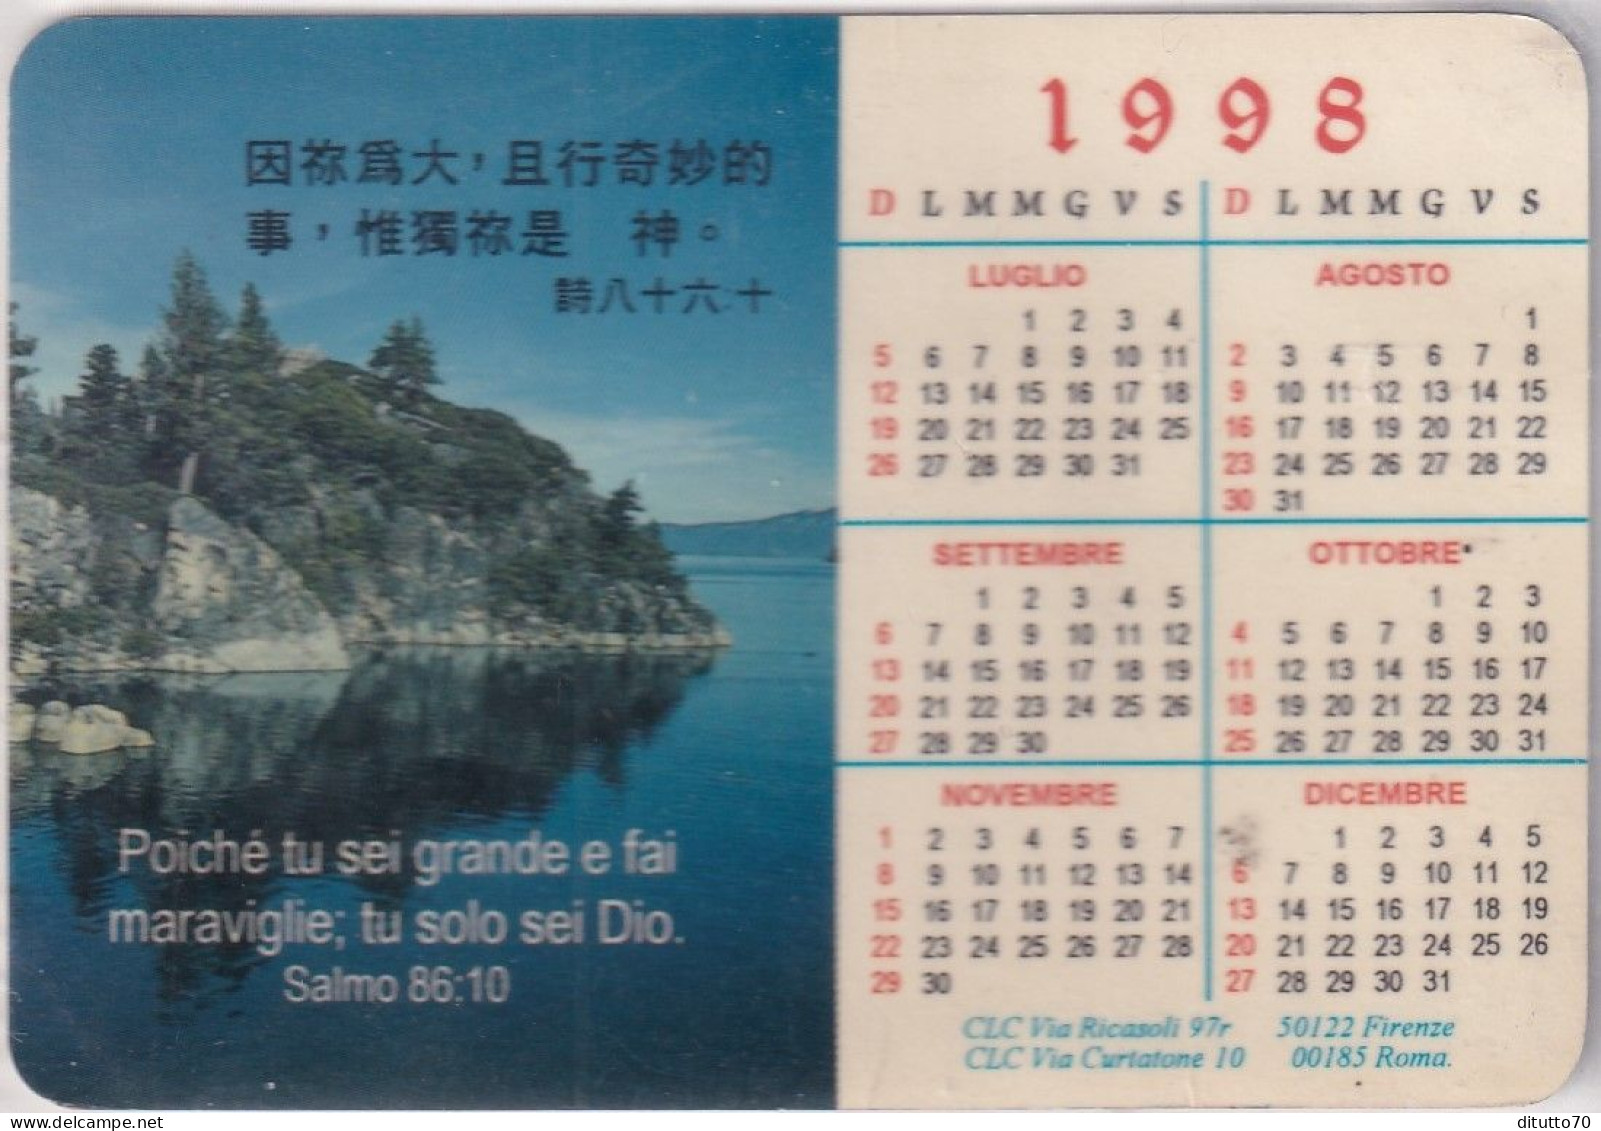 Calendarietto - Clc - Firenze - Roma - Anno 1998 - Small : 1991-00